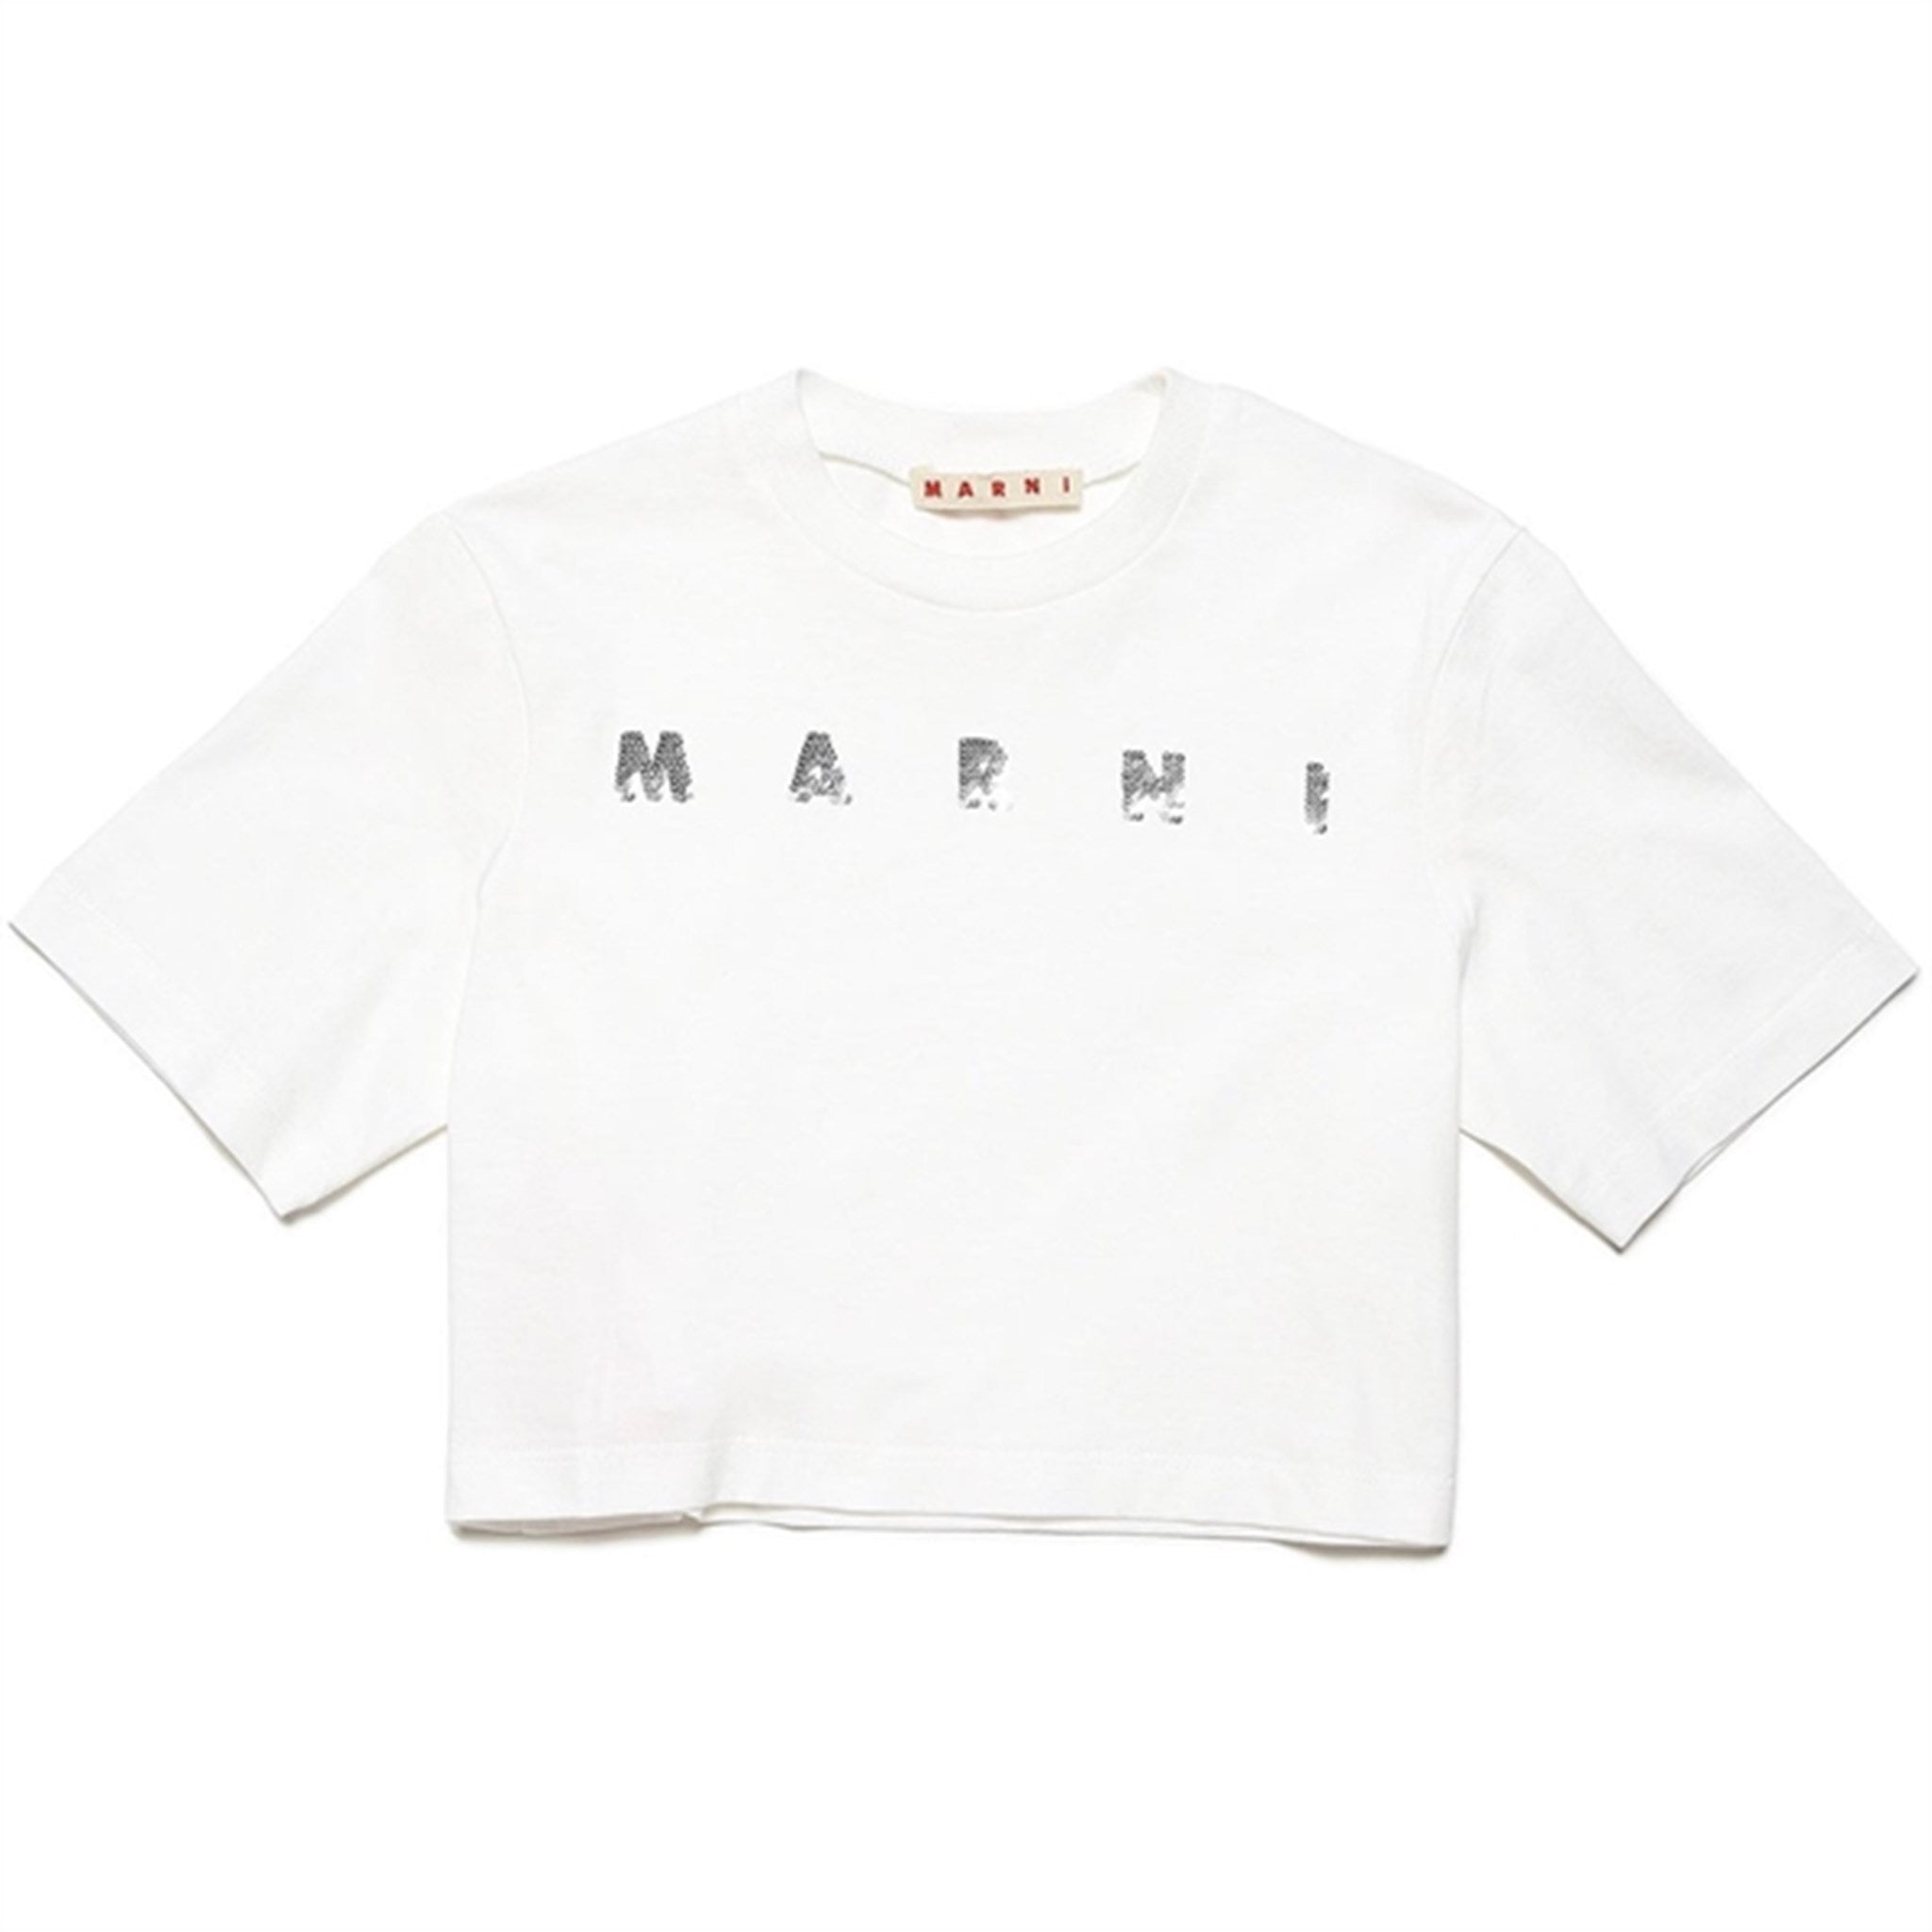 Marni Off White T-shirt